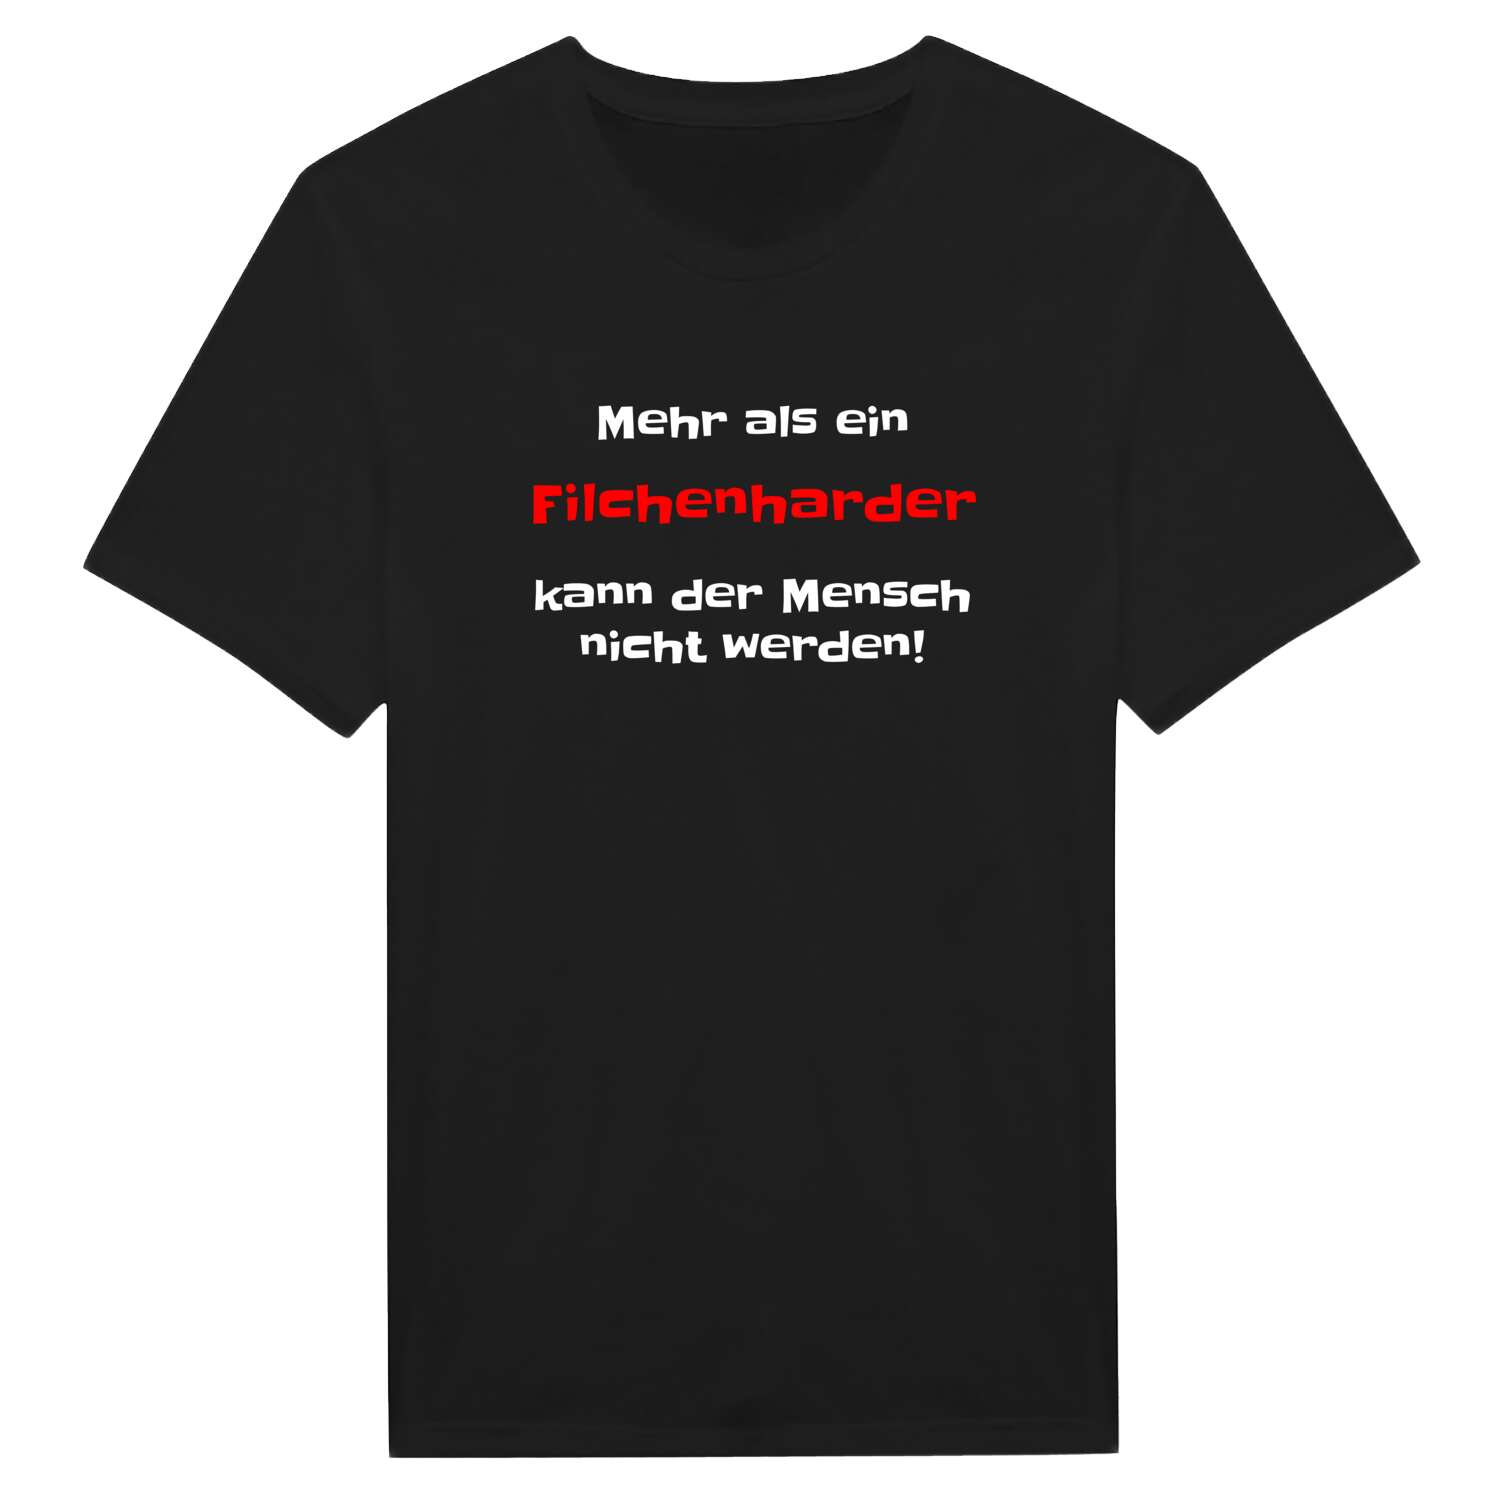 Filchenhard T-Shirt »Mehr als ein«